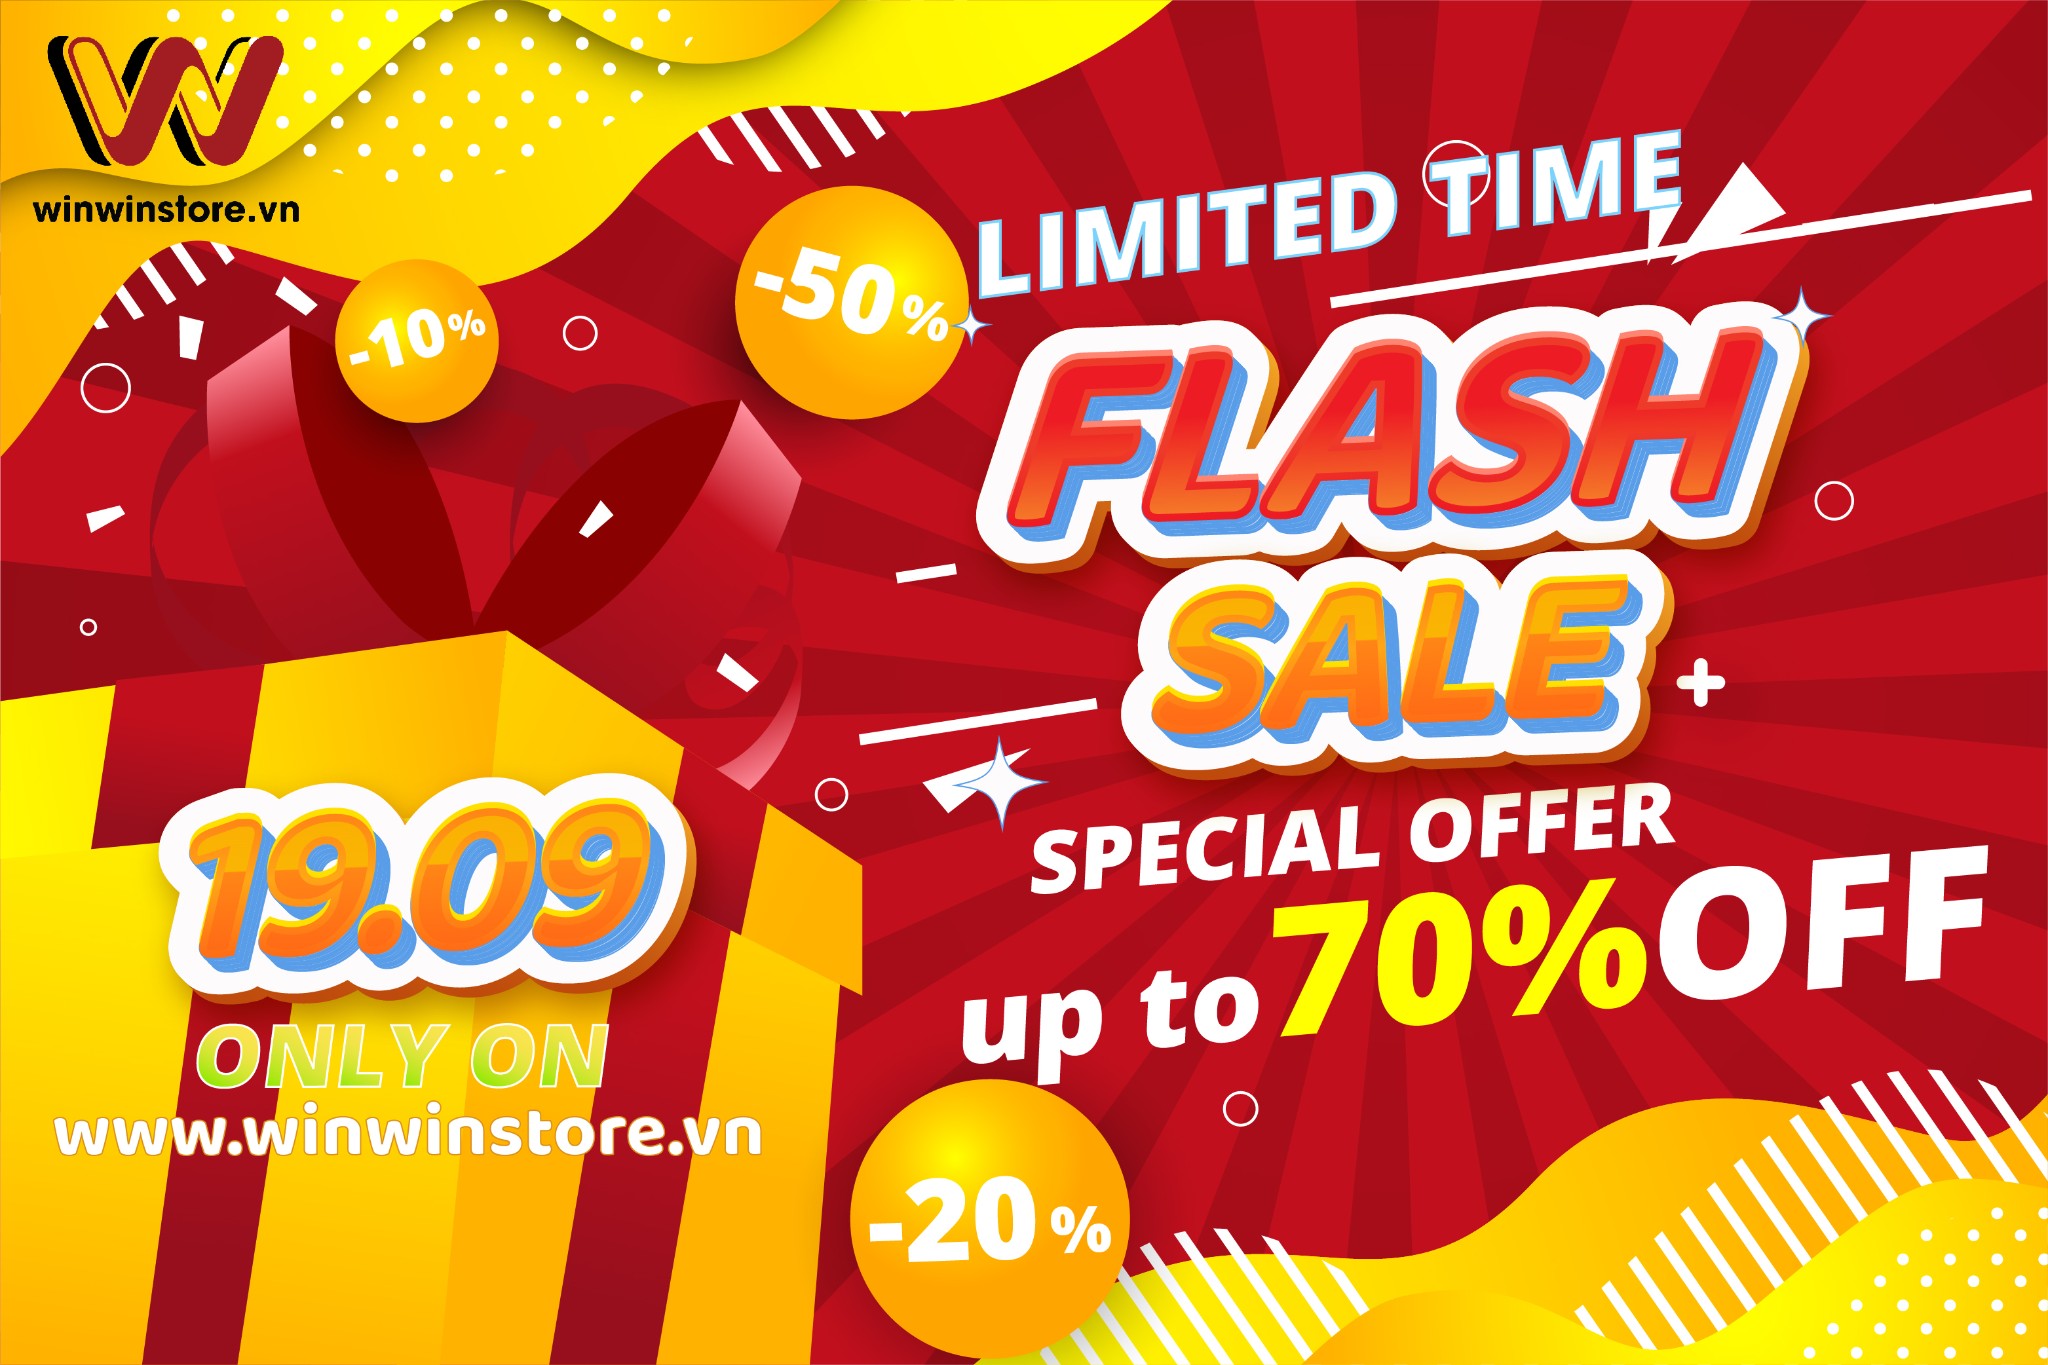 Bùng nổ flash sale ngày 19/09 tại WinWinStore, giảm giá cực mạnh theo từng khung giờ